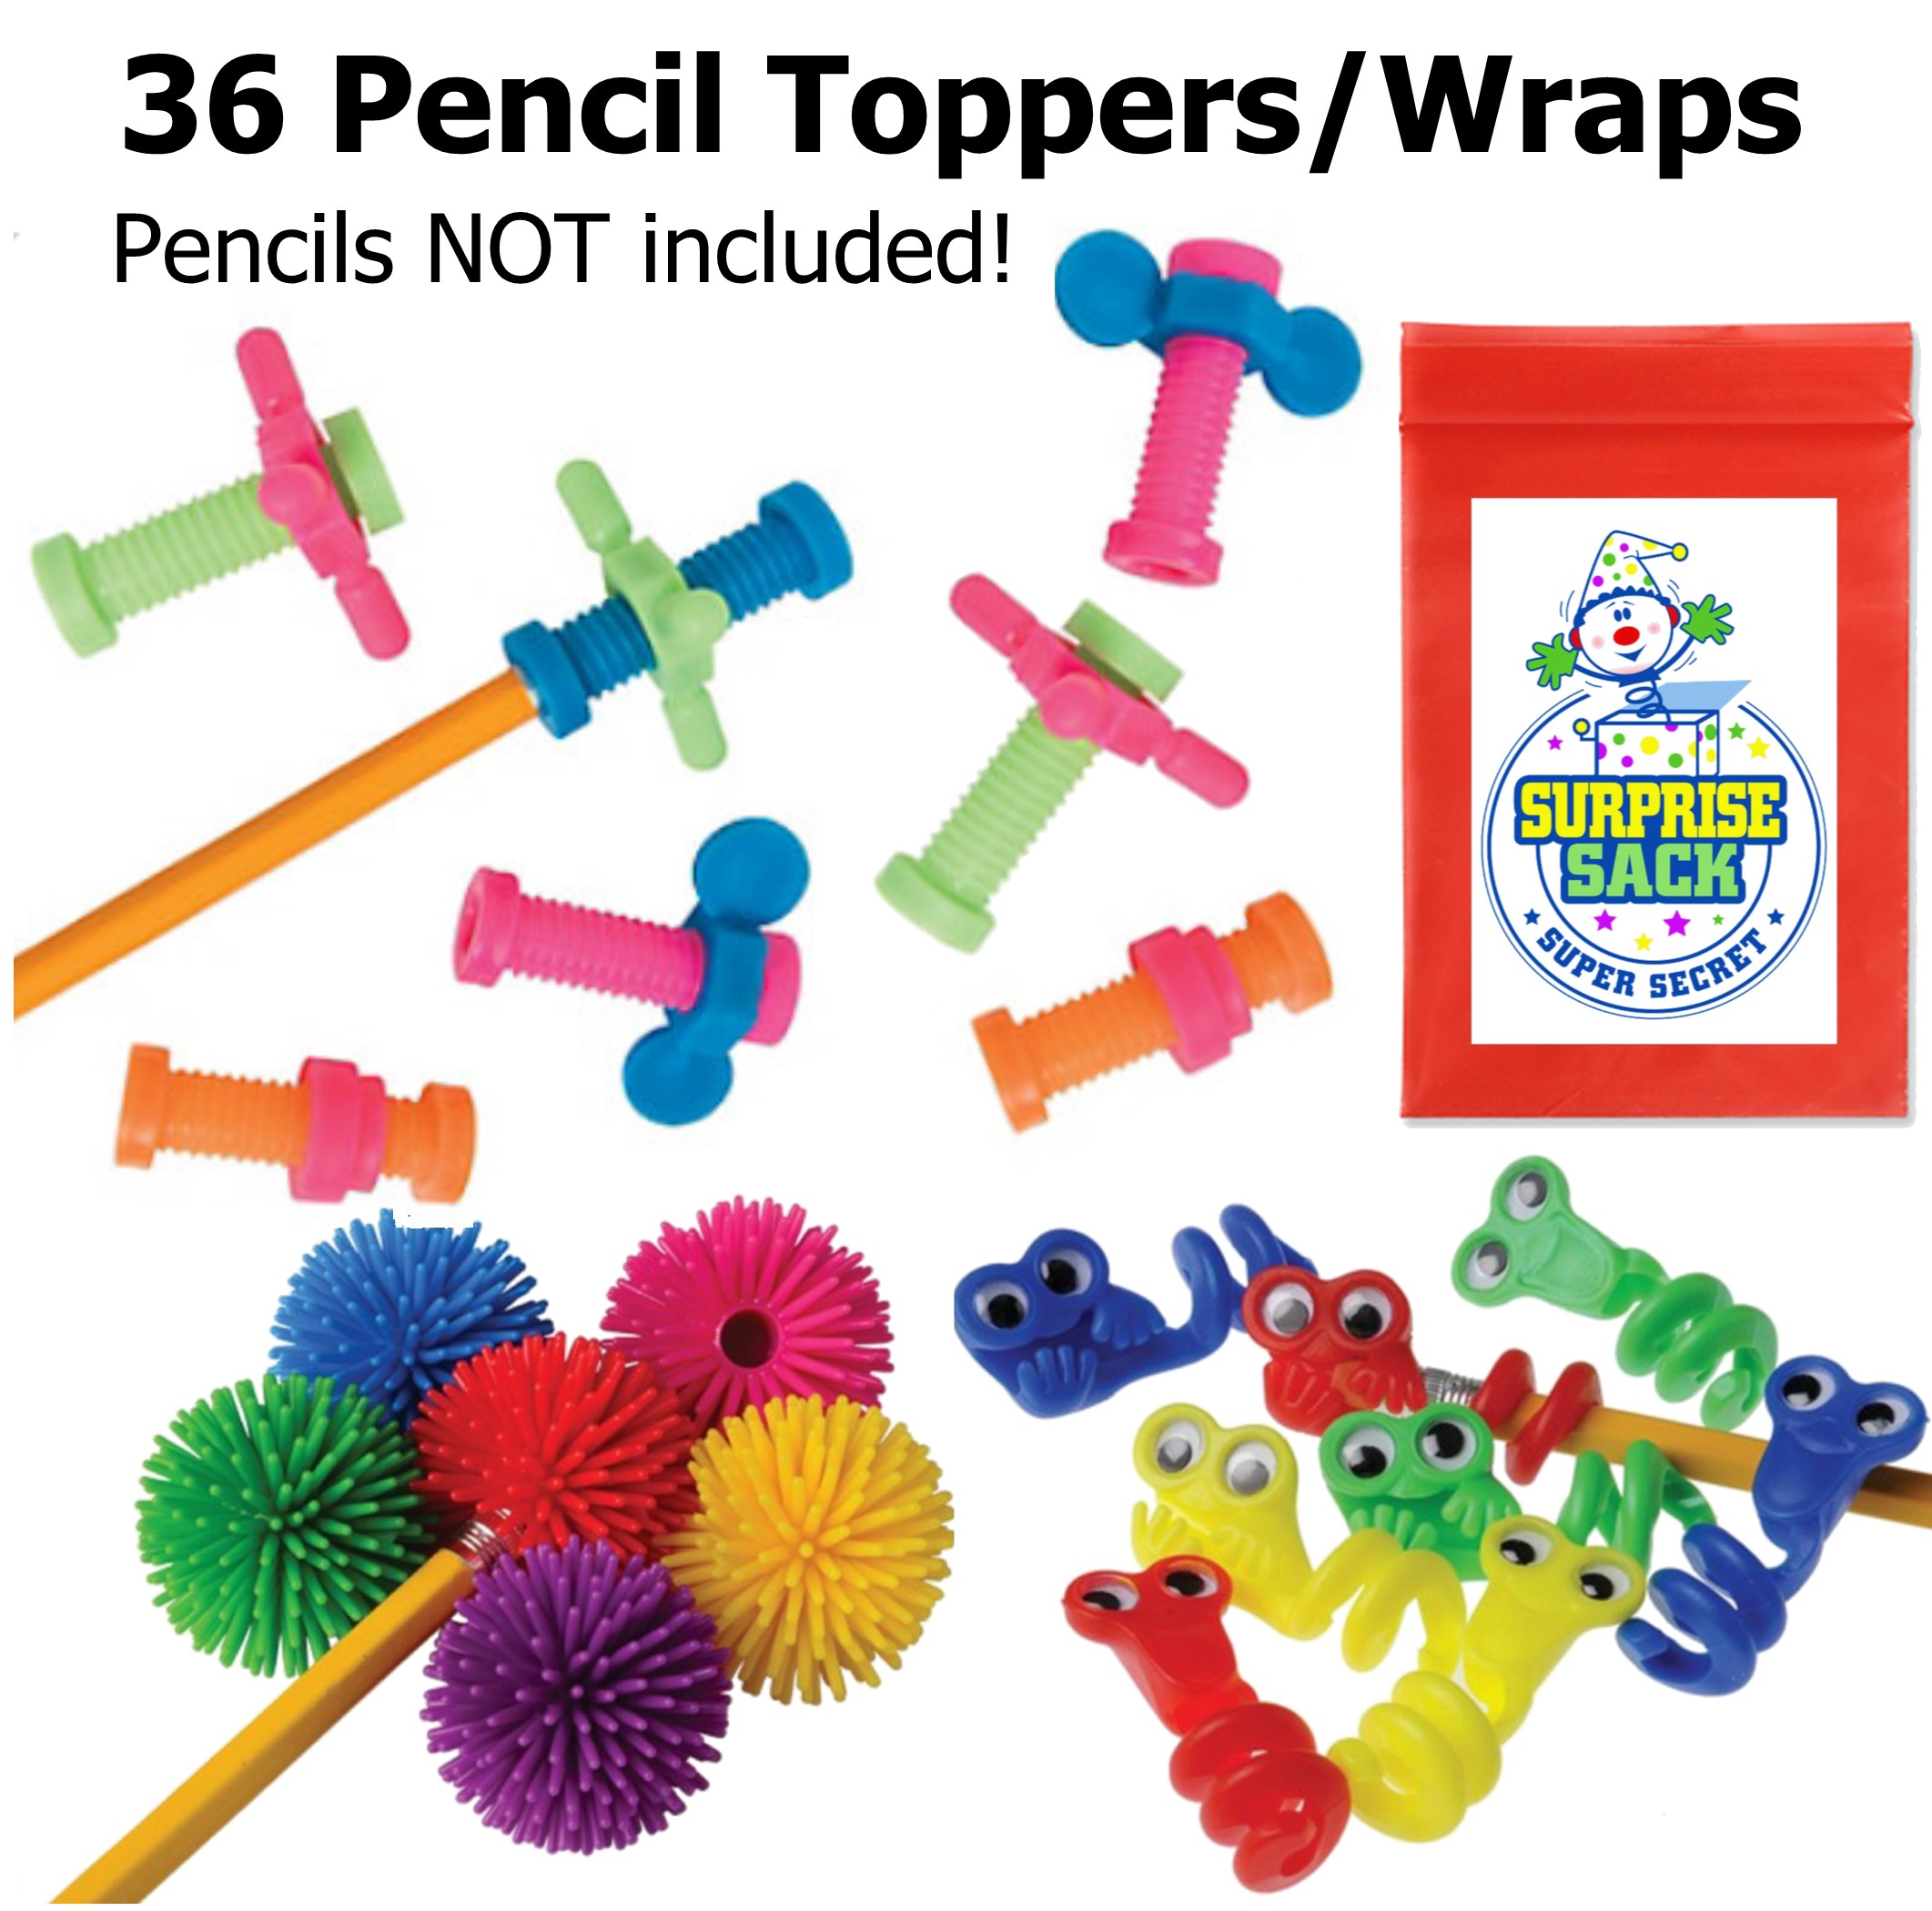 Triple Fidget Pencil Topper Pack 36 pc with 1 Super Secret Surprise Sack